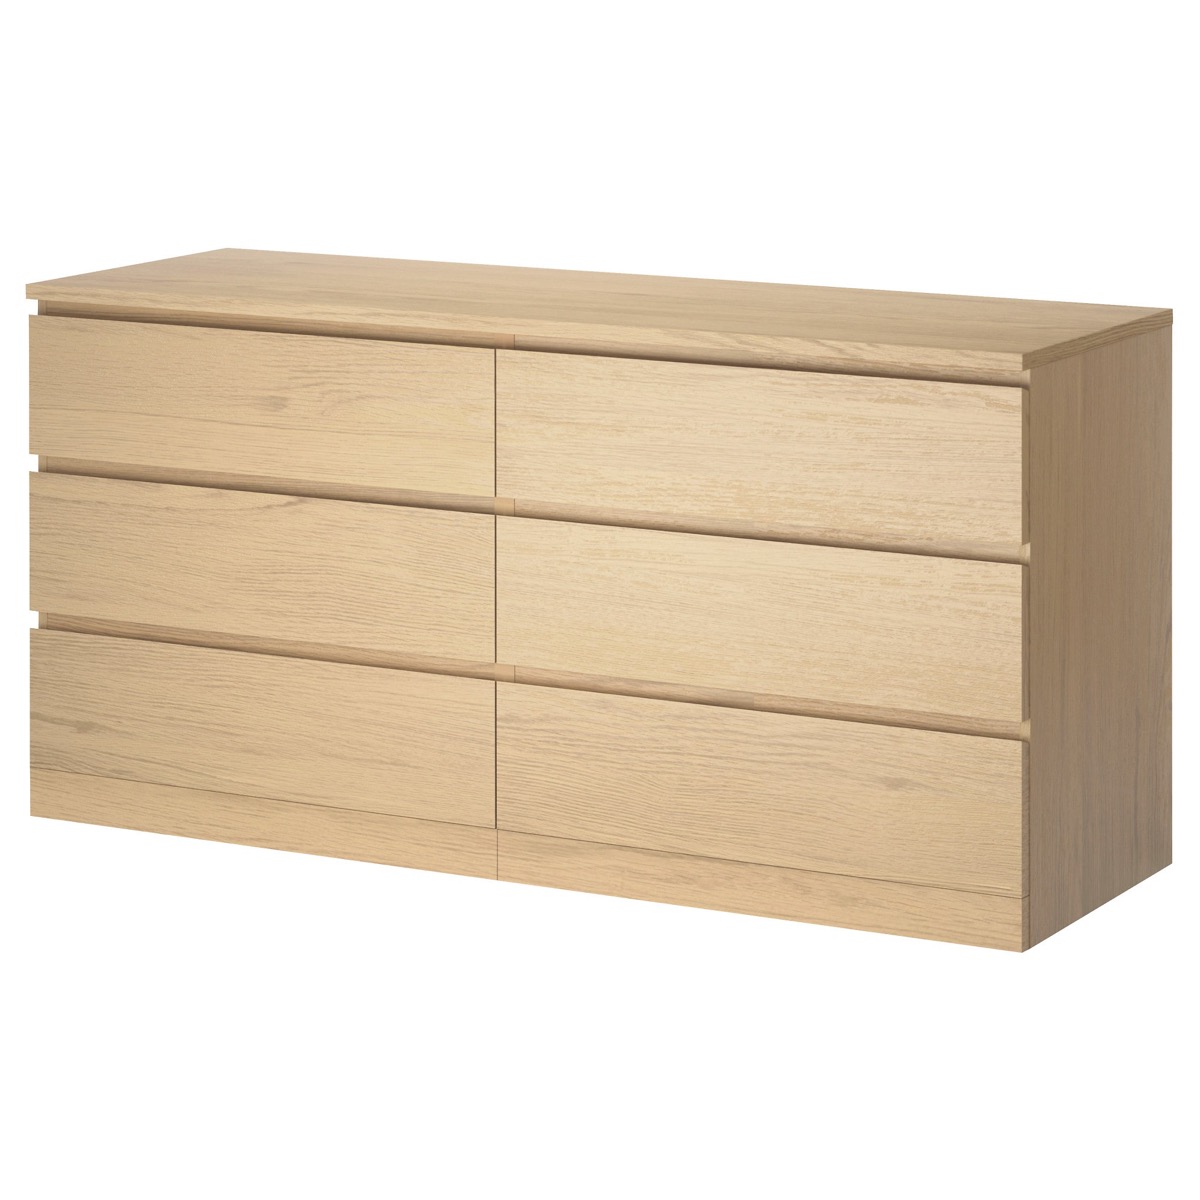 Ikea Malm Dresser {Never Buy at Ikea}